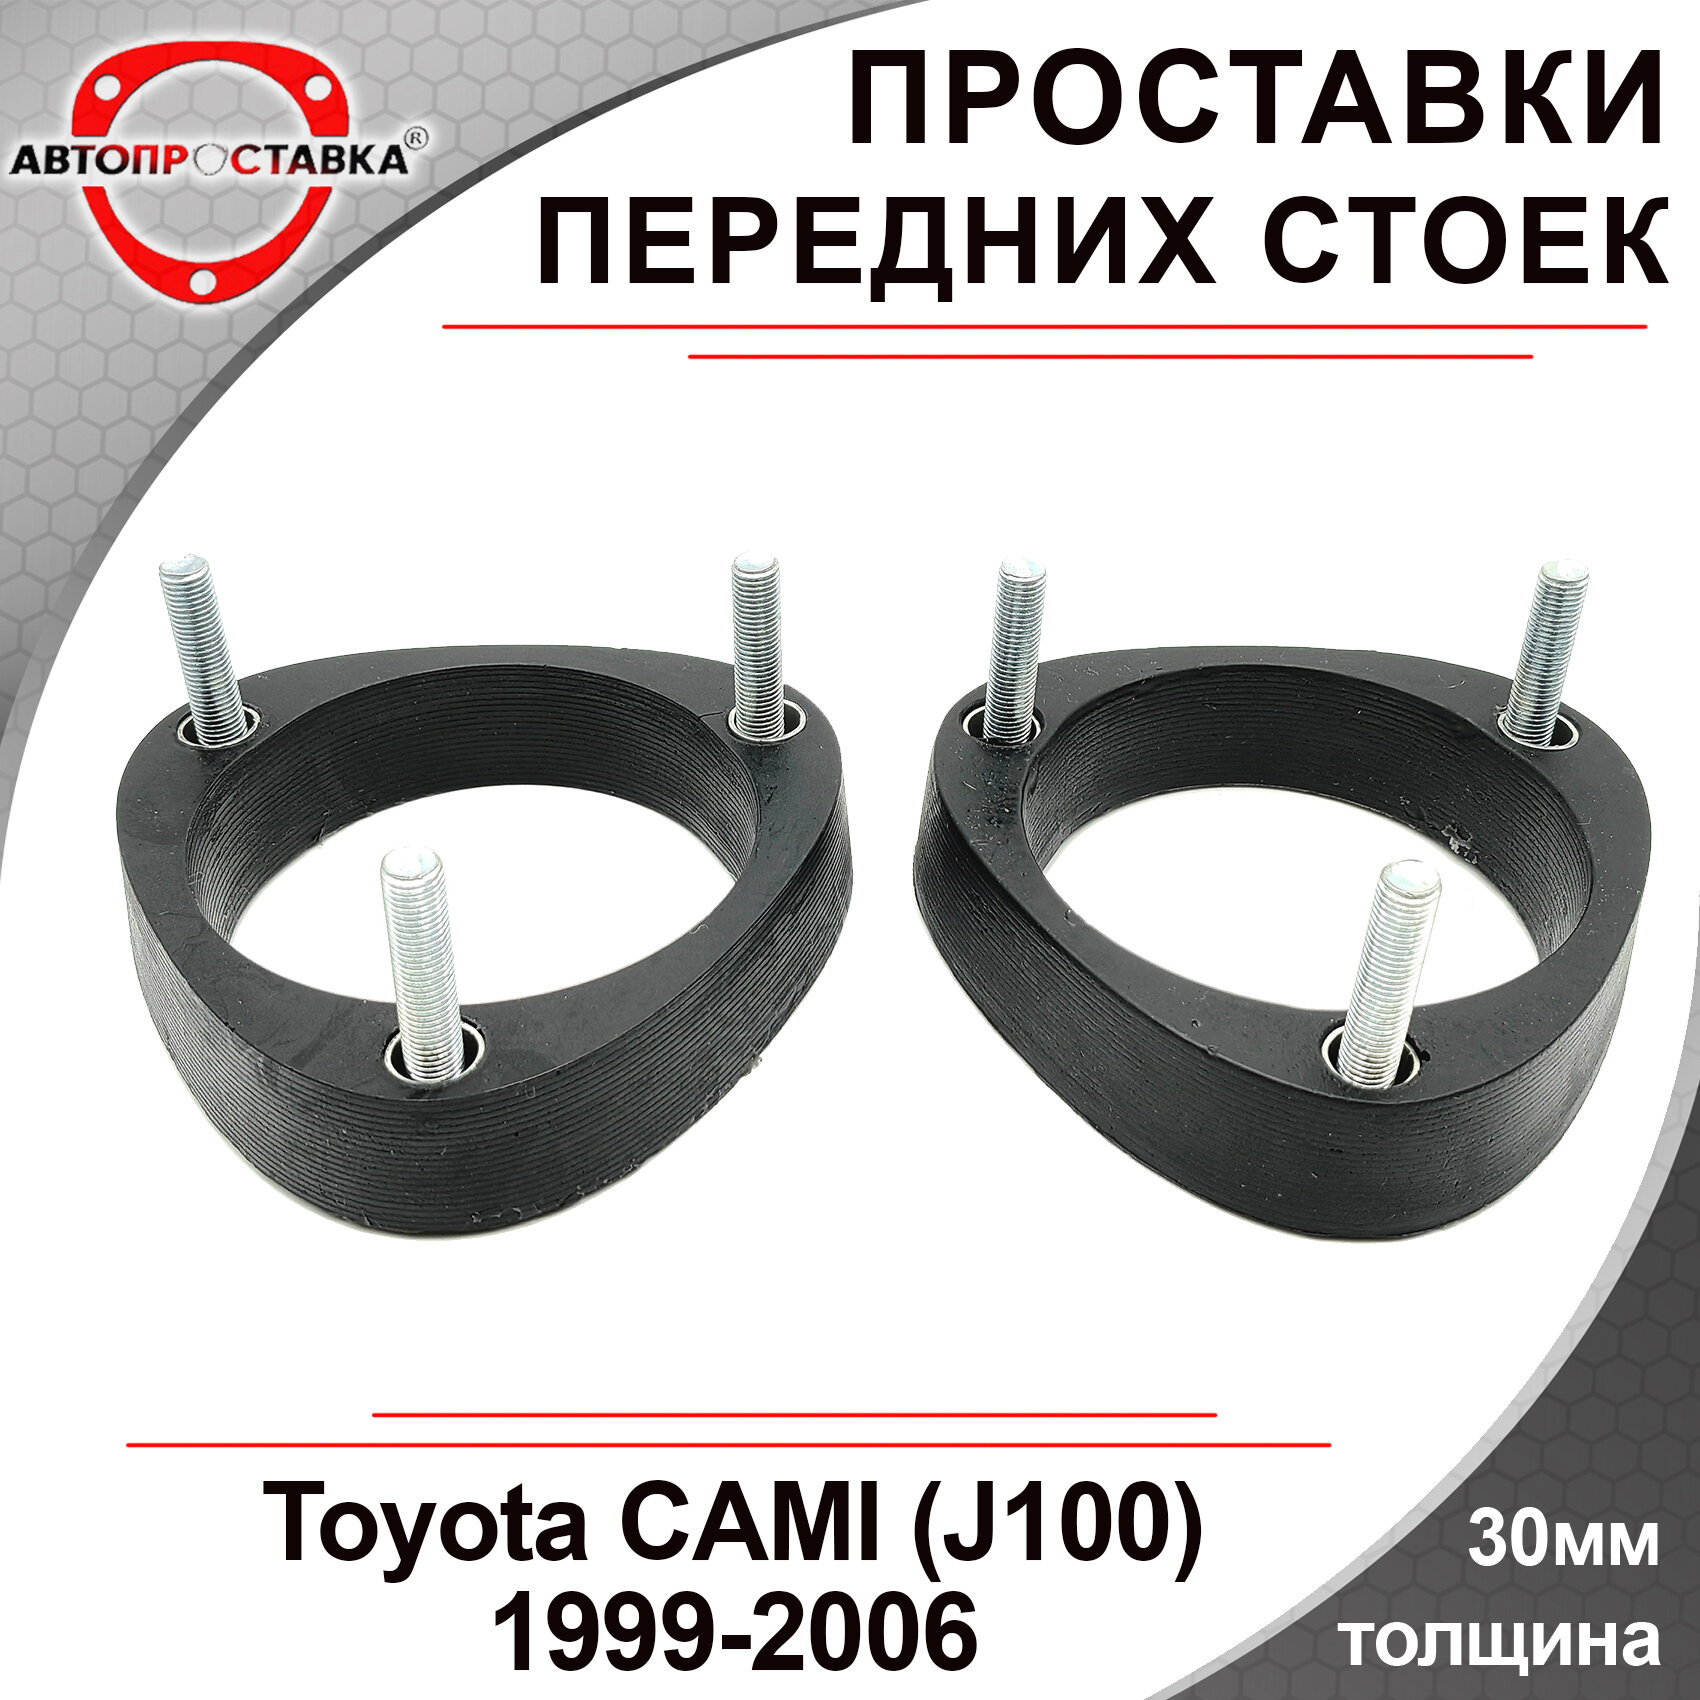 Проставки передних стоек 30мм для Toyota CAMI, (J100), 1999-2006, полиуретан, 2шт / проставки для увеличения клиренса / Автопроставка